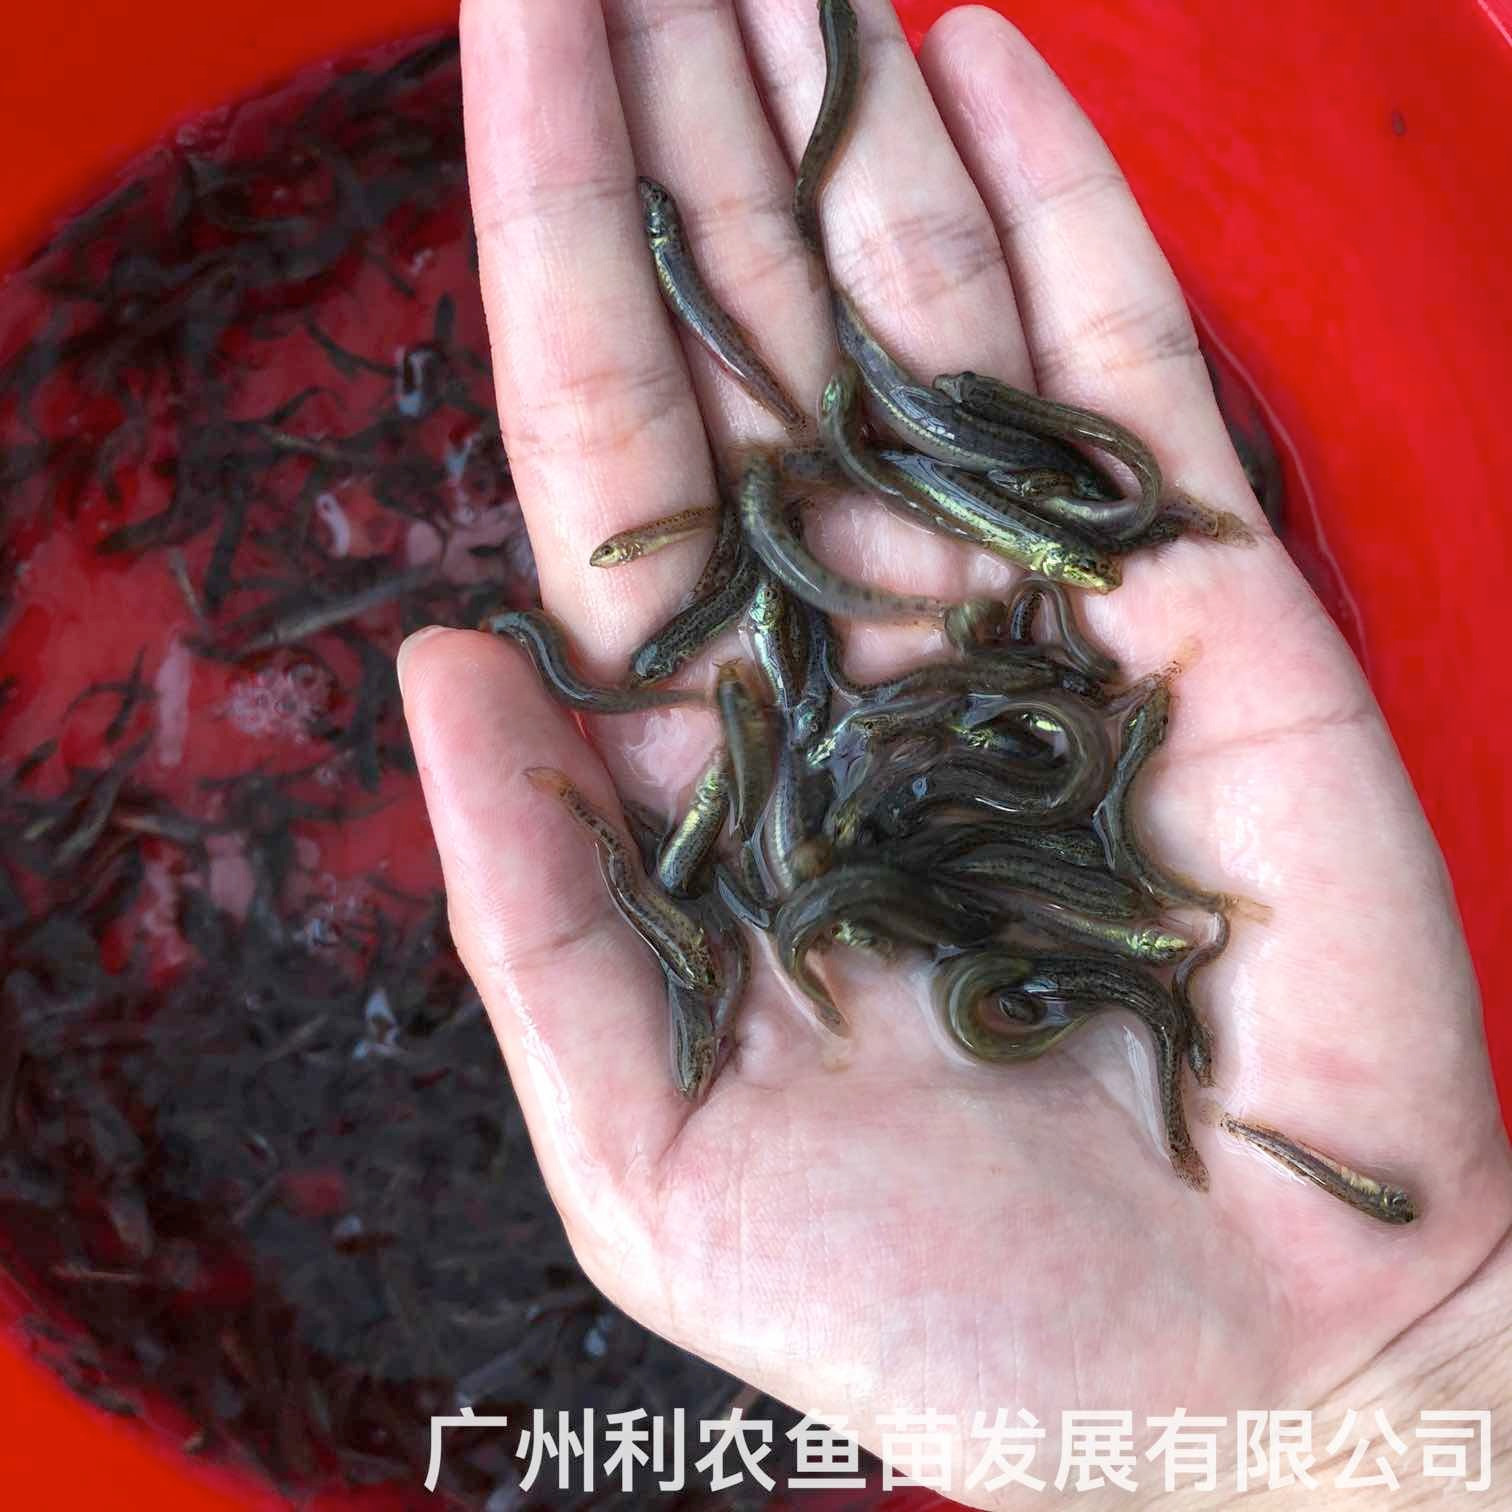 广东中山台湾泥鳅苗出售出售价格广东惠州泥鳅鱼苗批发养殖基地